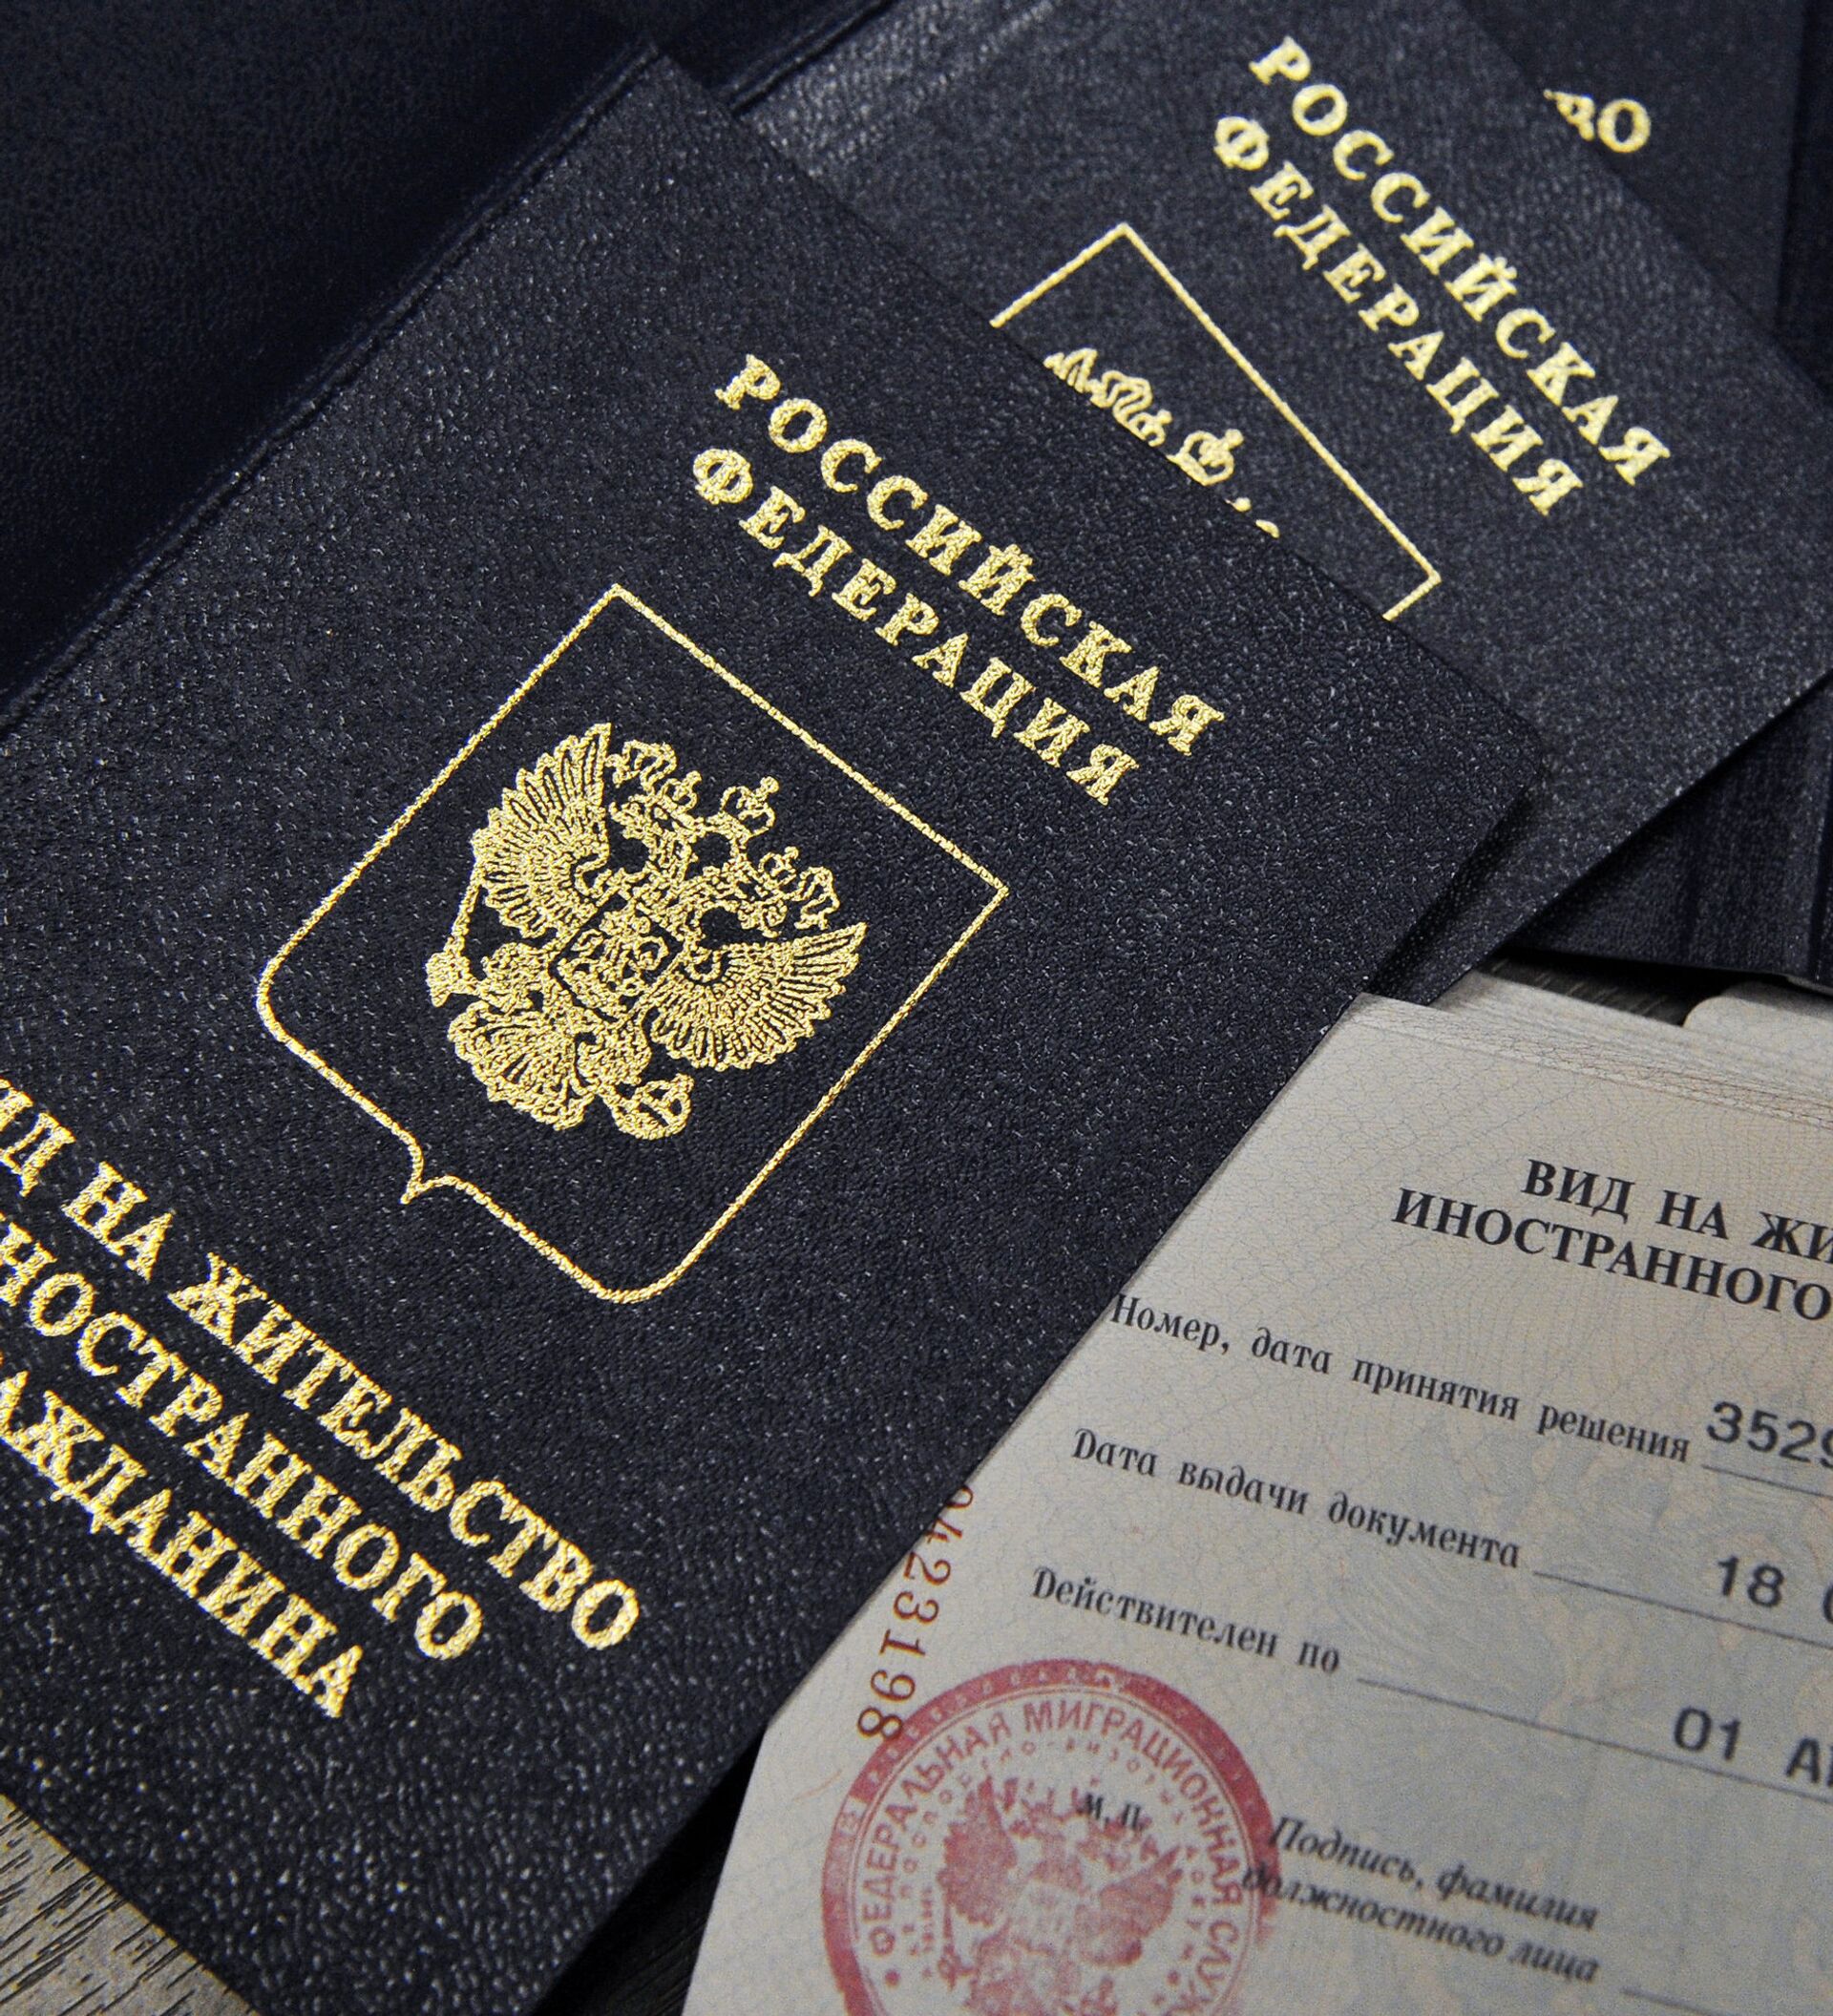 Российское гражданство квартира. Вид на жительство. Вид на жительство в России. Вид на жительство документ. Вид на жительство иностранного гражданина.